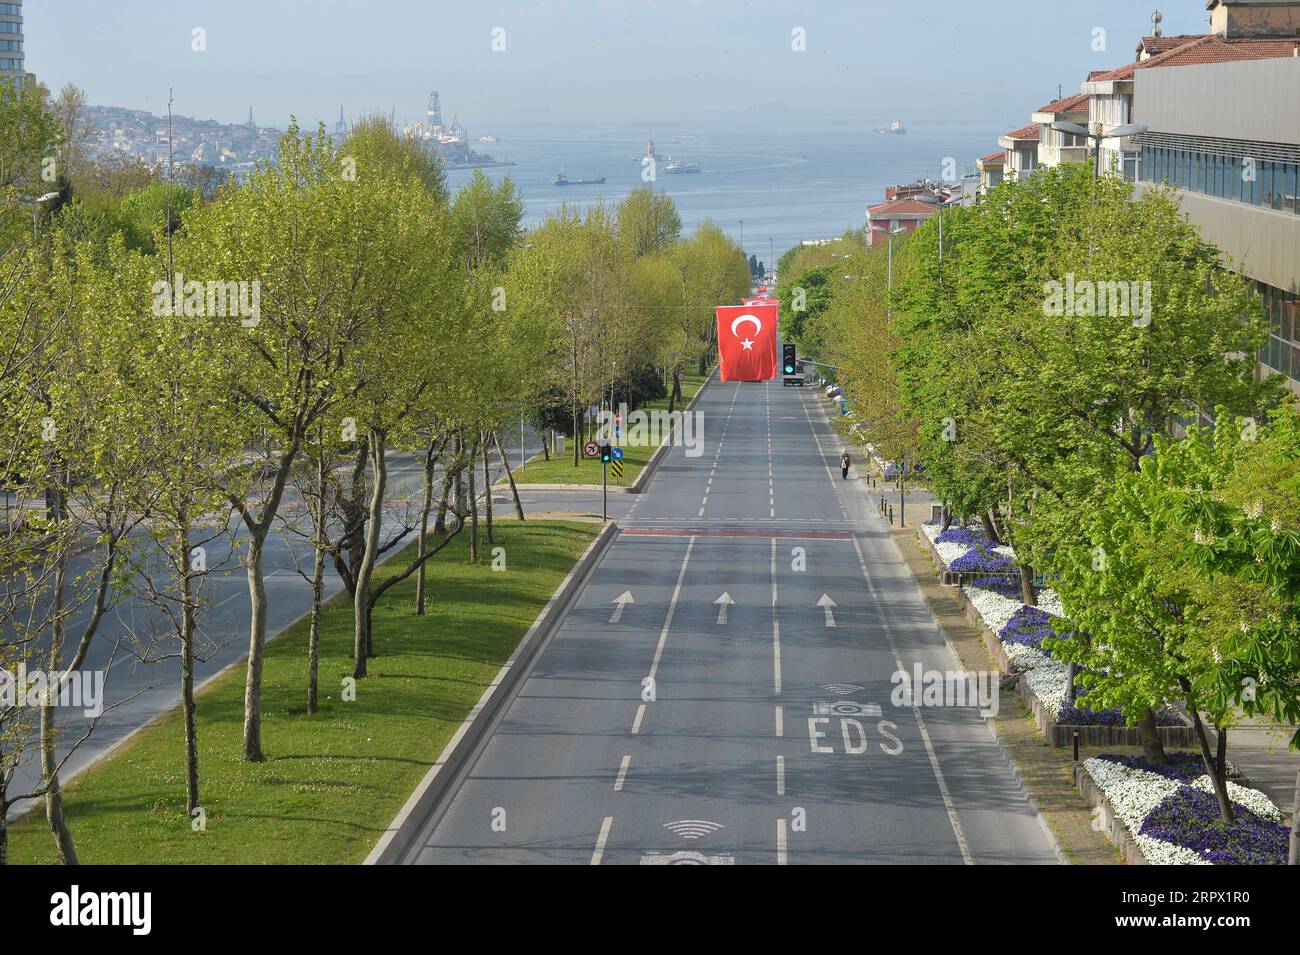 200503 -- ISTANBUL, 3 maggio 2020 -- foto scattata il 2 maggio 2020 mostra una strada vuota durante un confinamento COVID-19 a Istanbul, in Turchia. Sabato la Turchia ha segnalato 1.983 nuovi casi di COVID-19, la prima volta che la cifra è scesa al di sotto dei 2.000 dal marzo 30. Il numero totale di casi confermati di COVID-19 in Turchia è salito a 124.375, mentre il bilancio delle vittime è salito a 3.336 dopo che sono stati aggiunti altri 78 casi, il ministro della salute turco Fahrettin Koca ha twittato sabato. Finora 58.259 pazienti si sono ripresi dalla malattia respiratoria virale nel paese più colpito del Medio Oriente, secondo Koca. TURKE Foto Stock